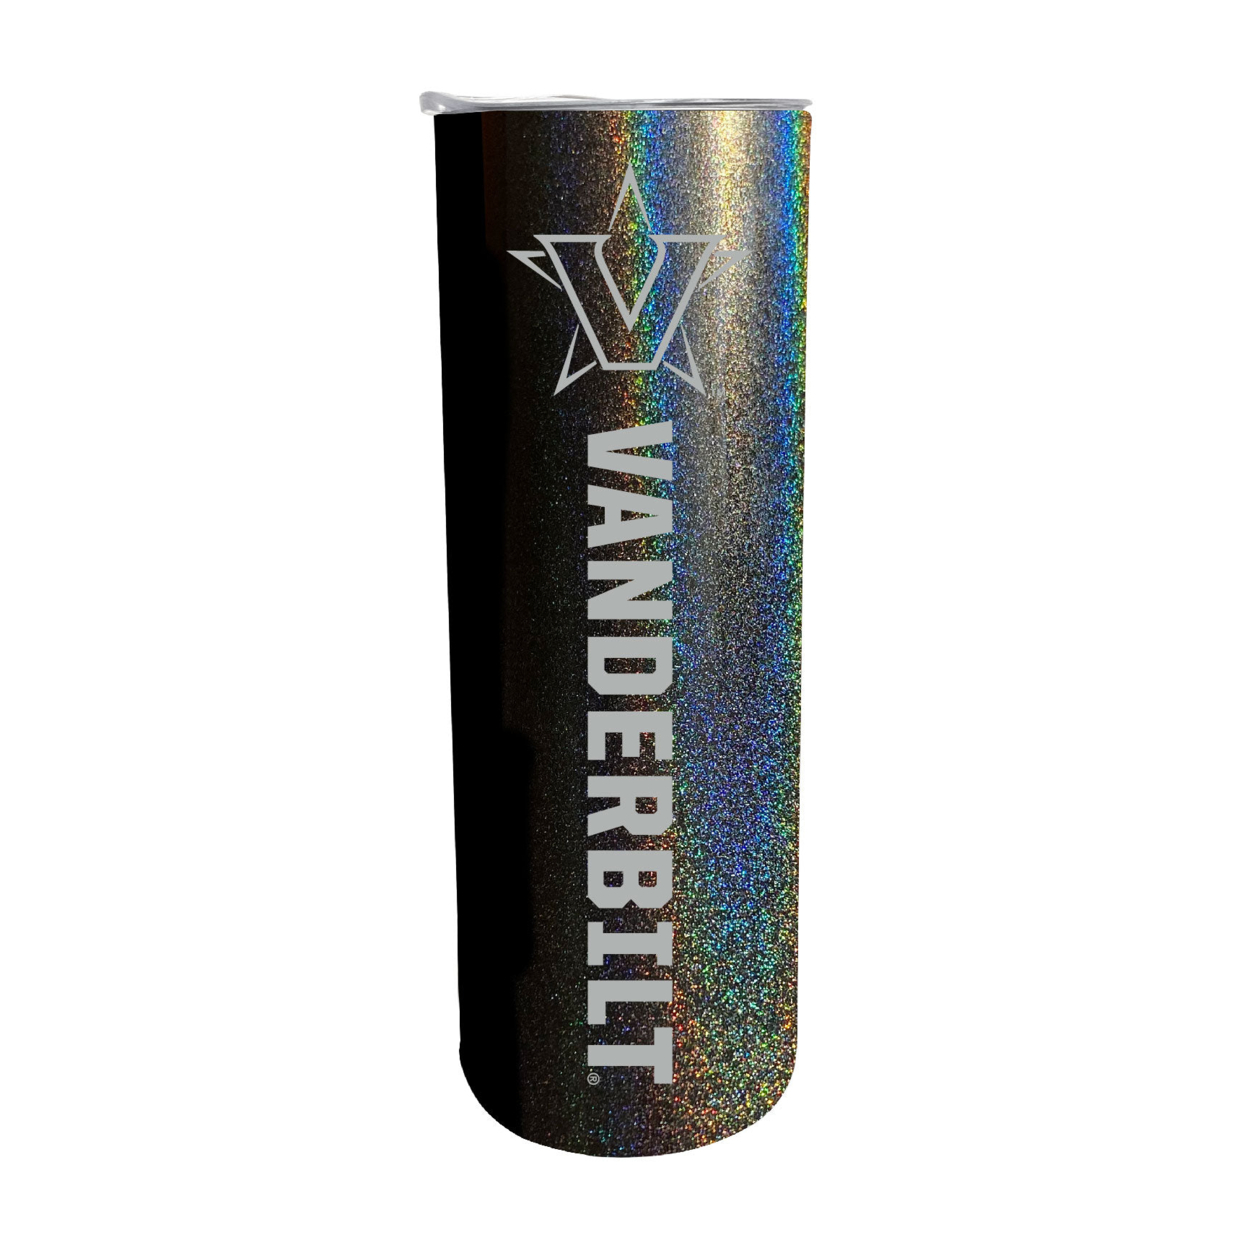 Vanderbilt University 20oz Insulated Stainless Steel Skinny Tumbler - Navy